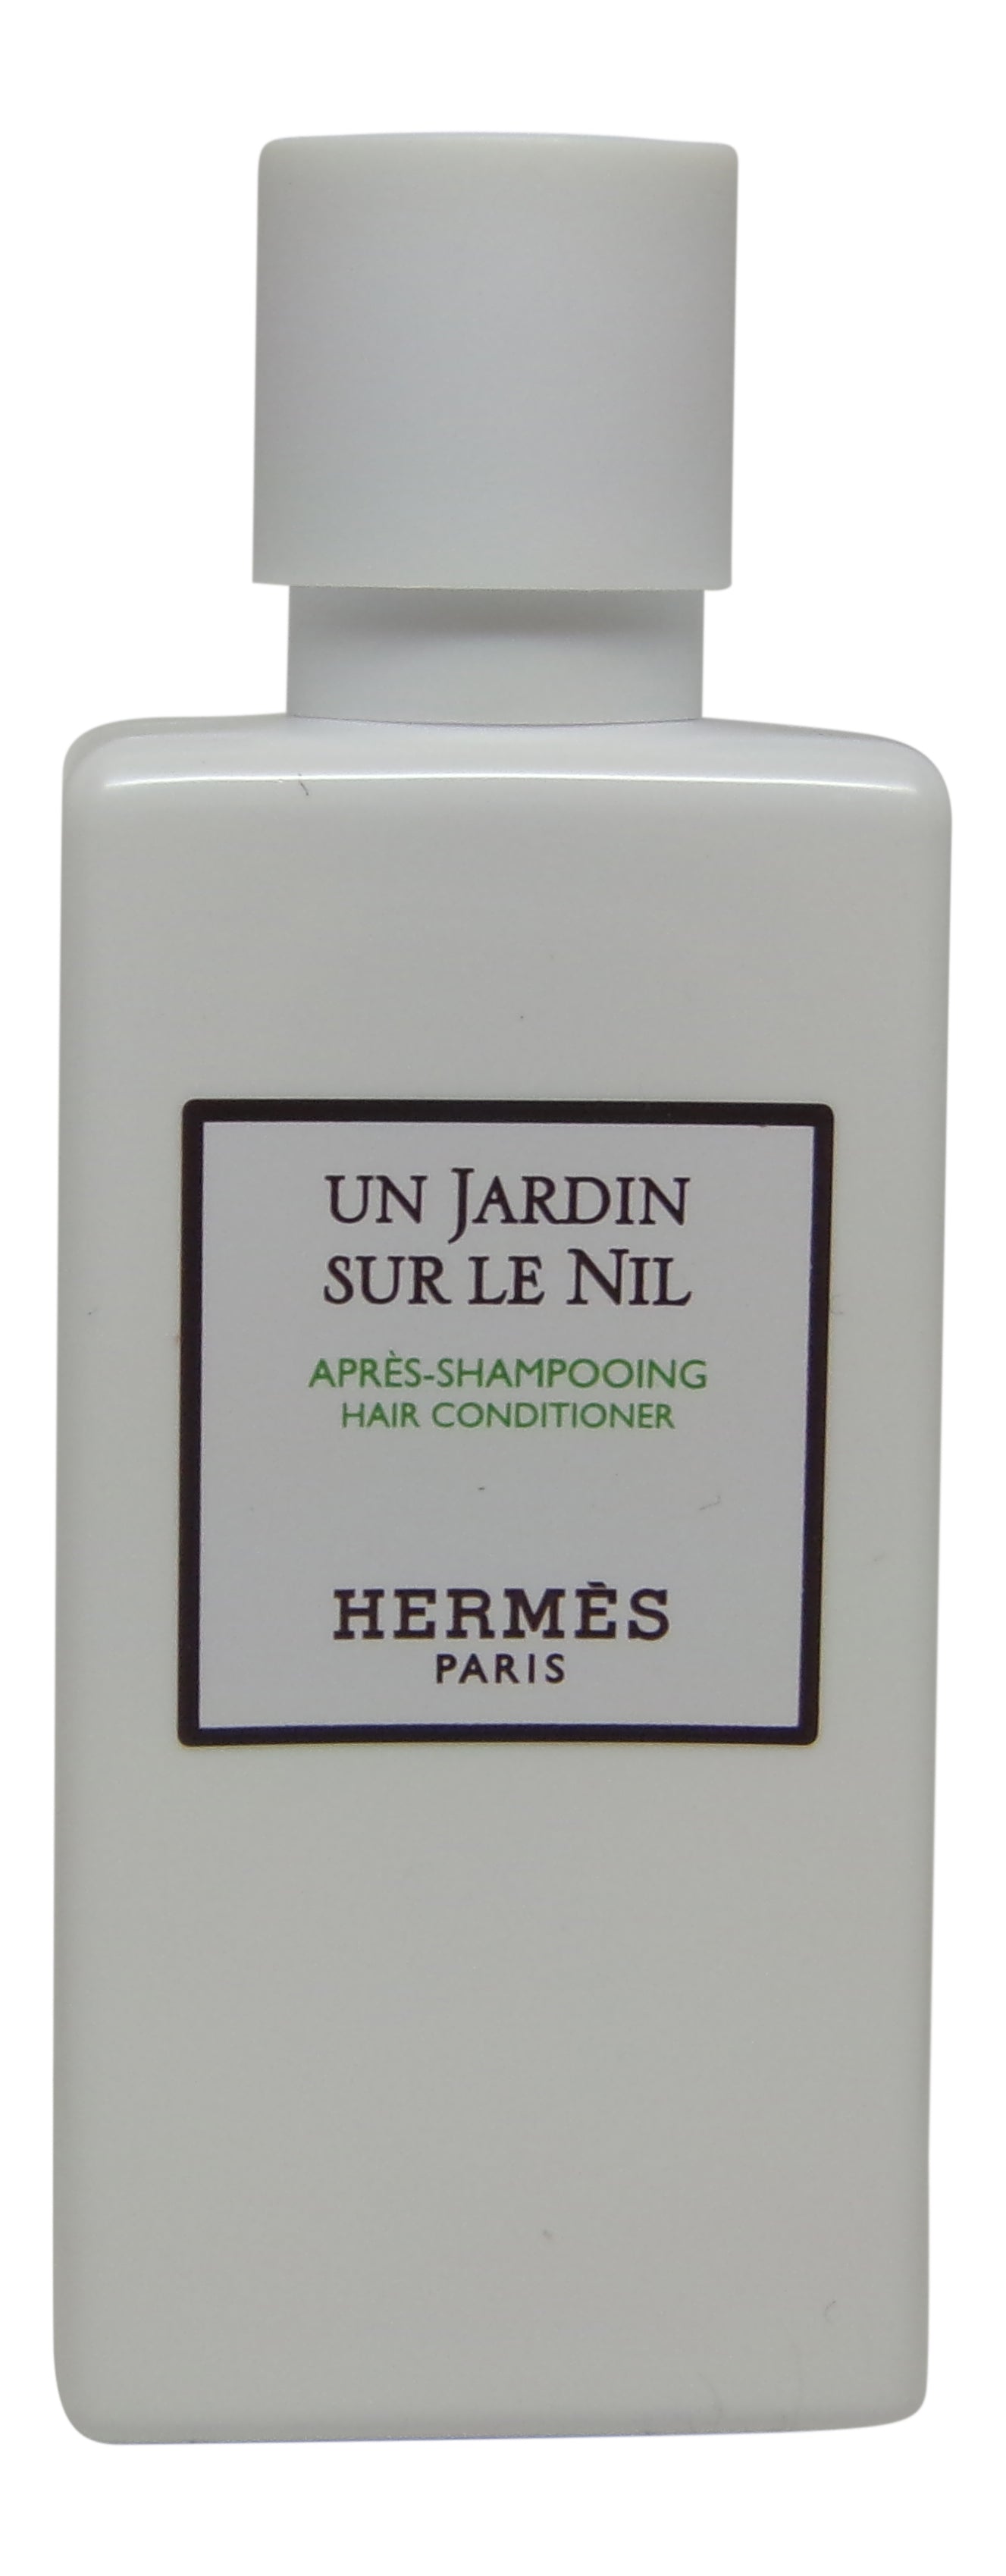 Hermes Un Jardin Sur le Nil Conditioner lot of 12ea 1.35oz Bottles. Total of 16.2oz